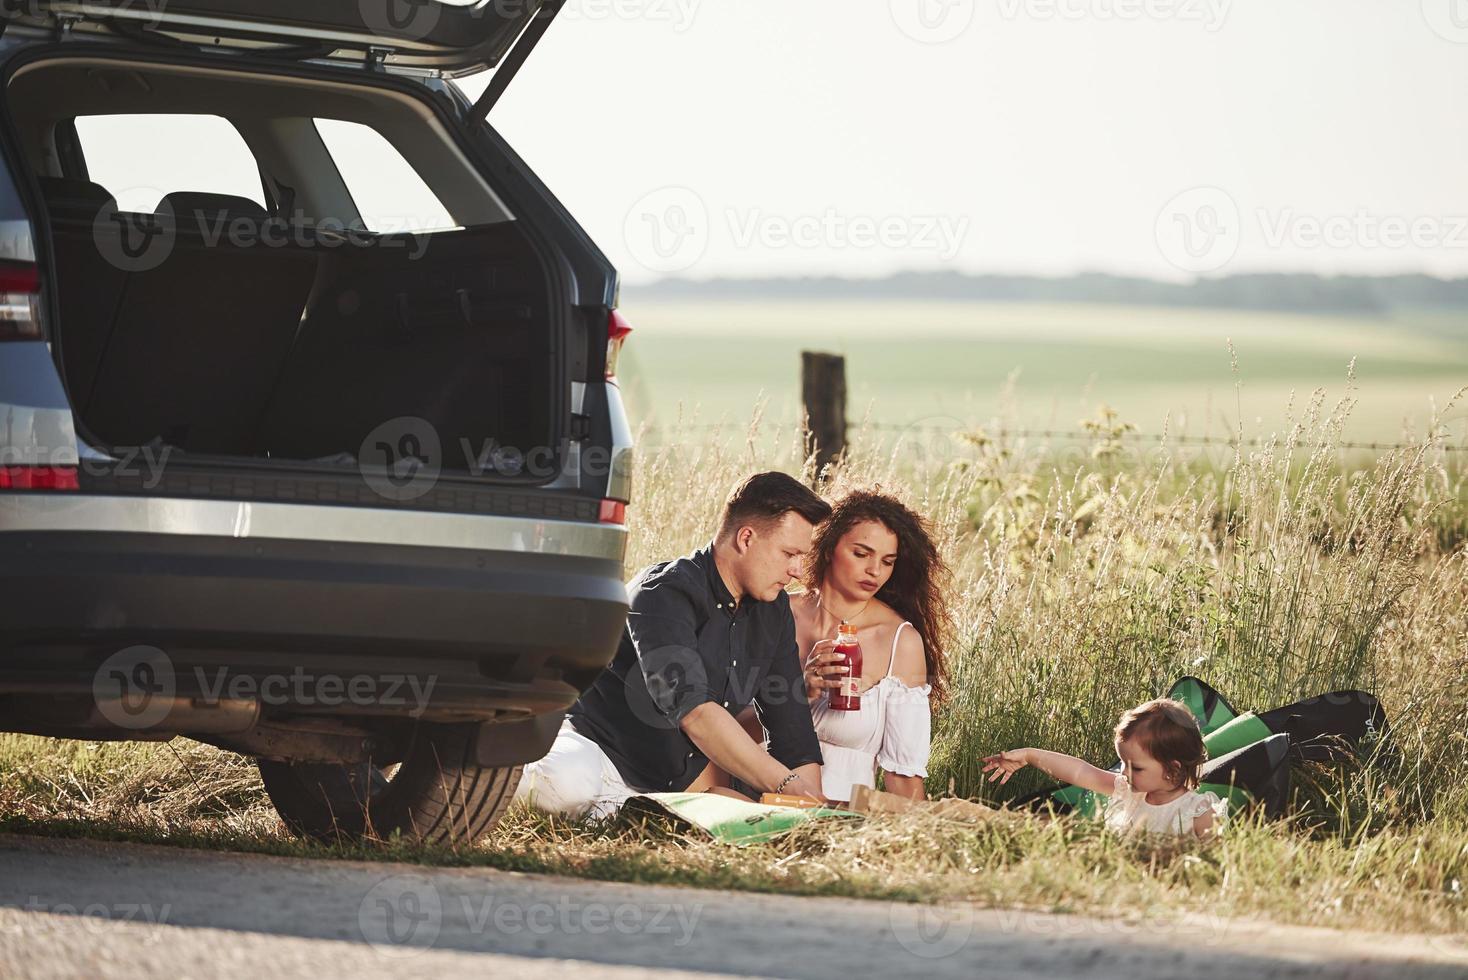 estado de ánimo tranquilo. la familia hace un picnic en el campo cerca del automóvil plateado al atardecer foto